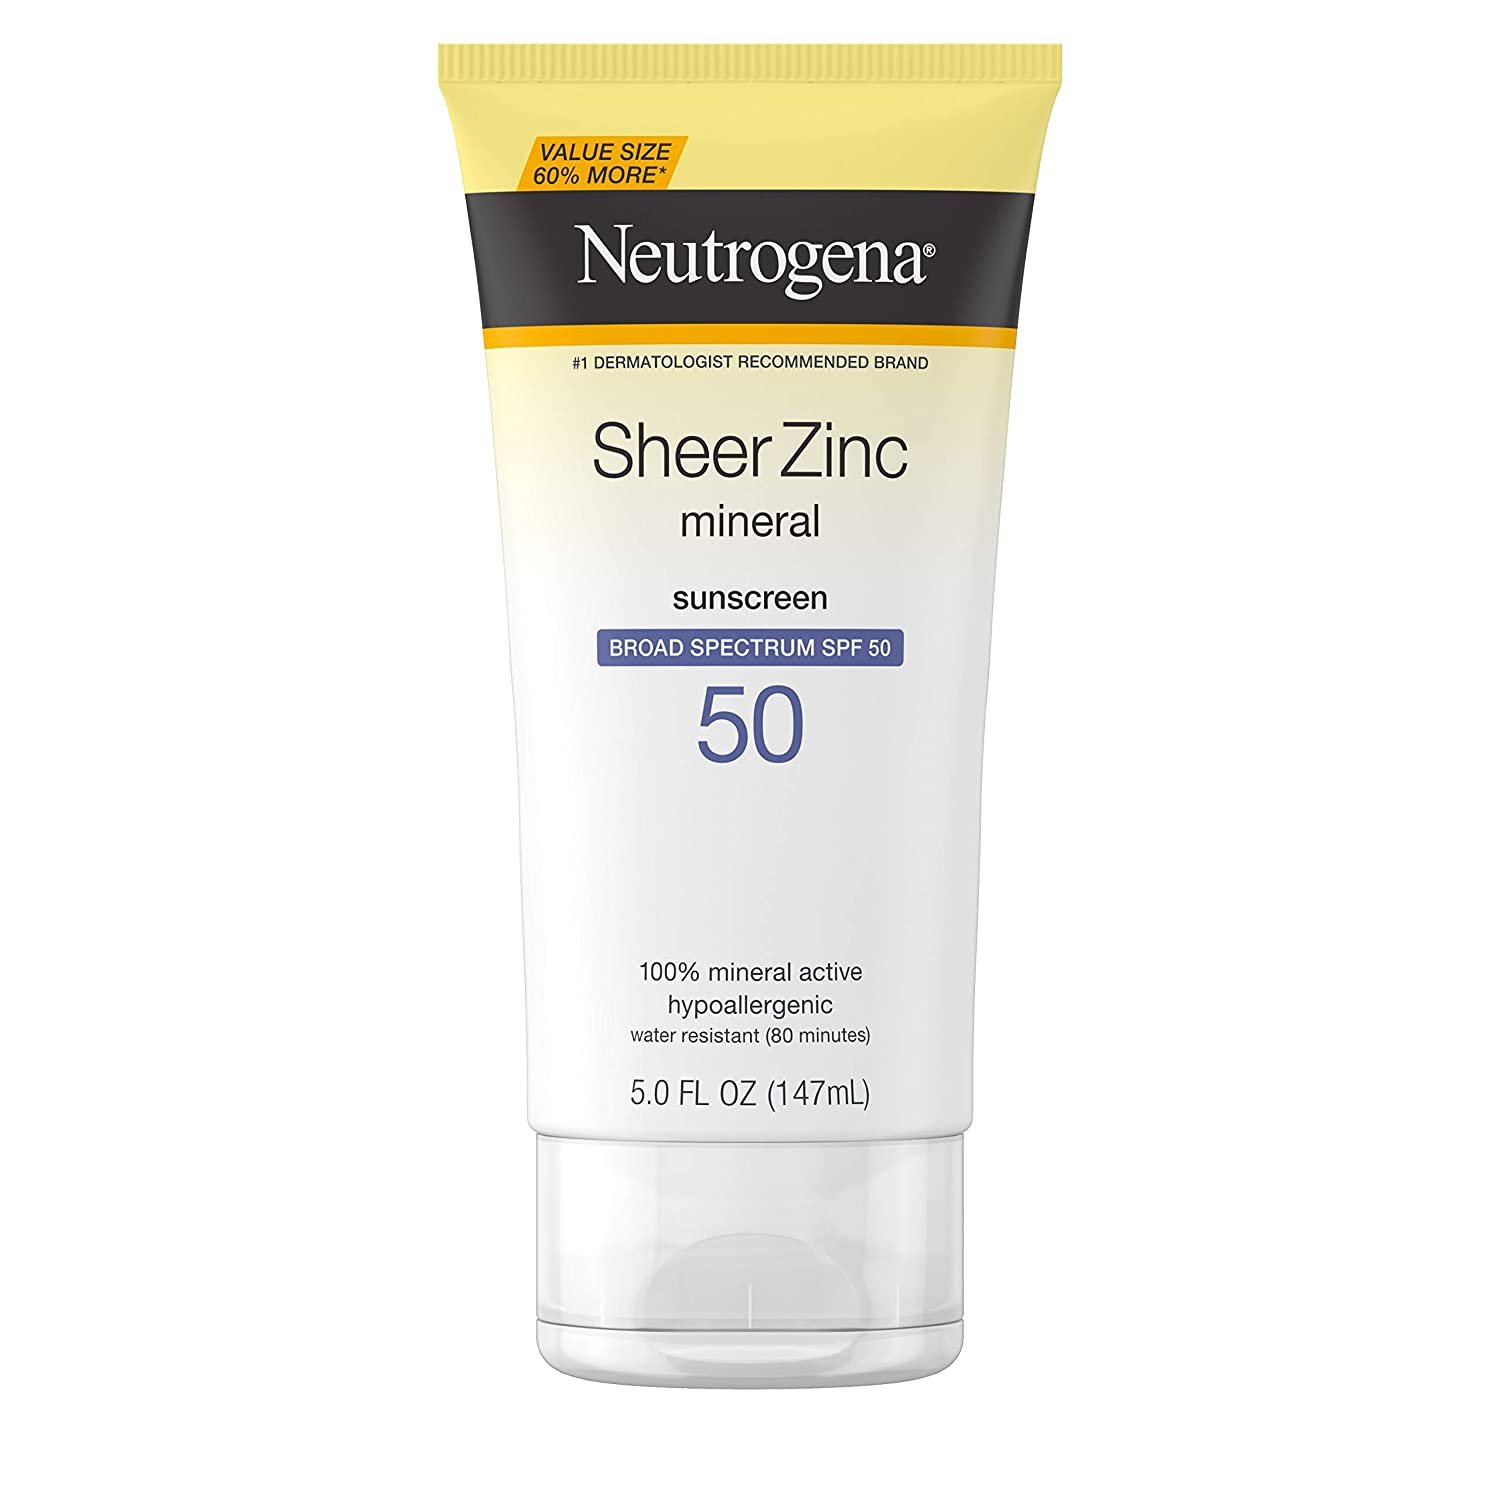 Neutrogena Sheer Zinc Sunscreen